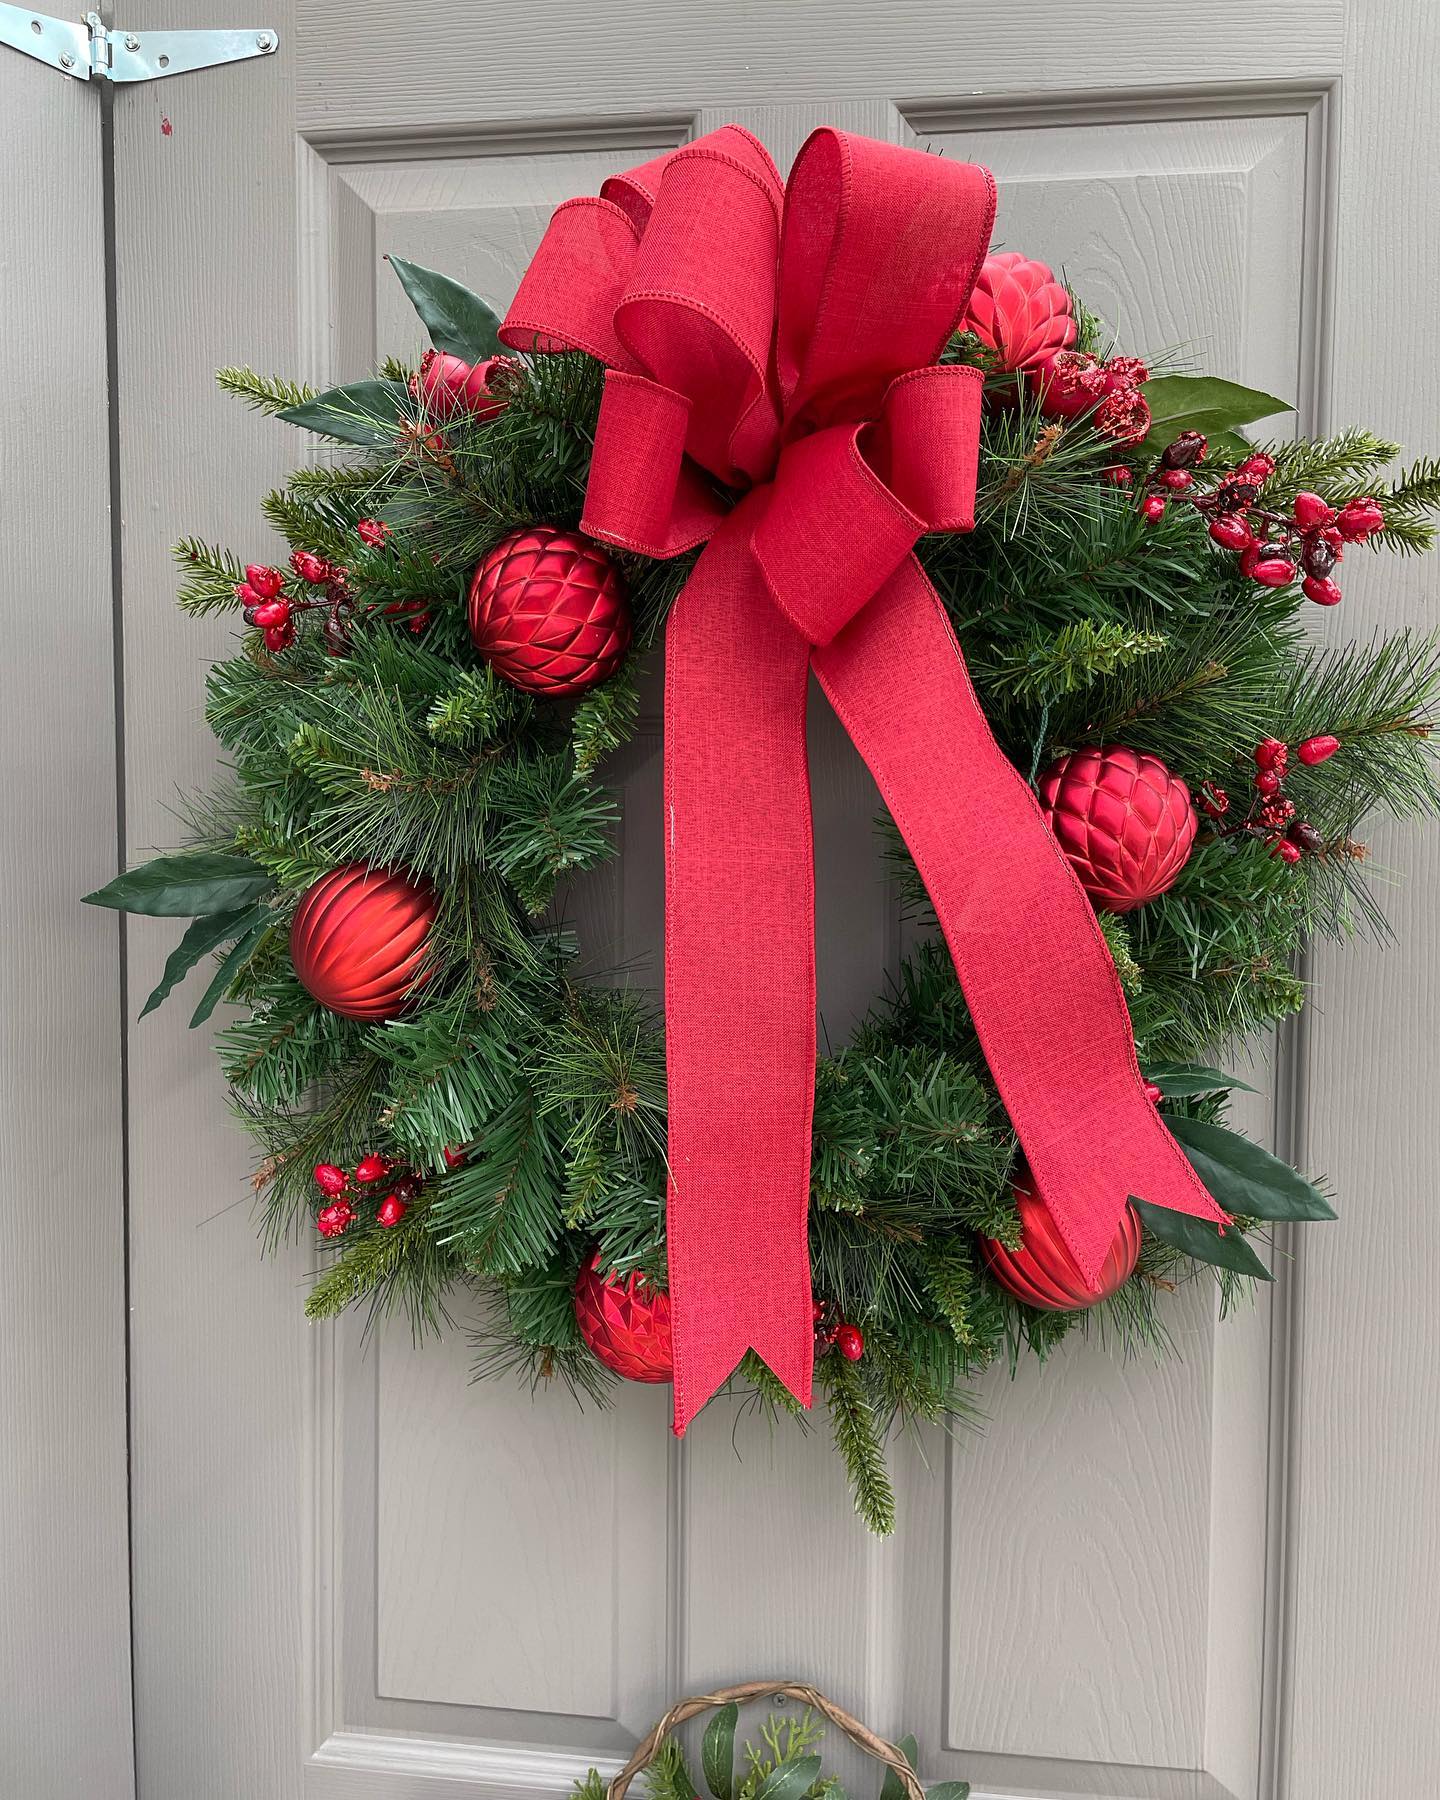 wreath hanging on door